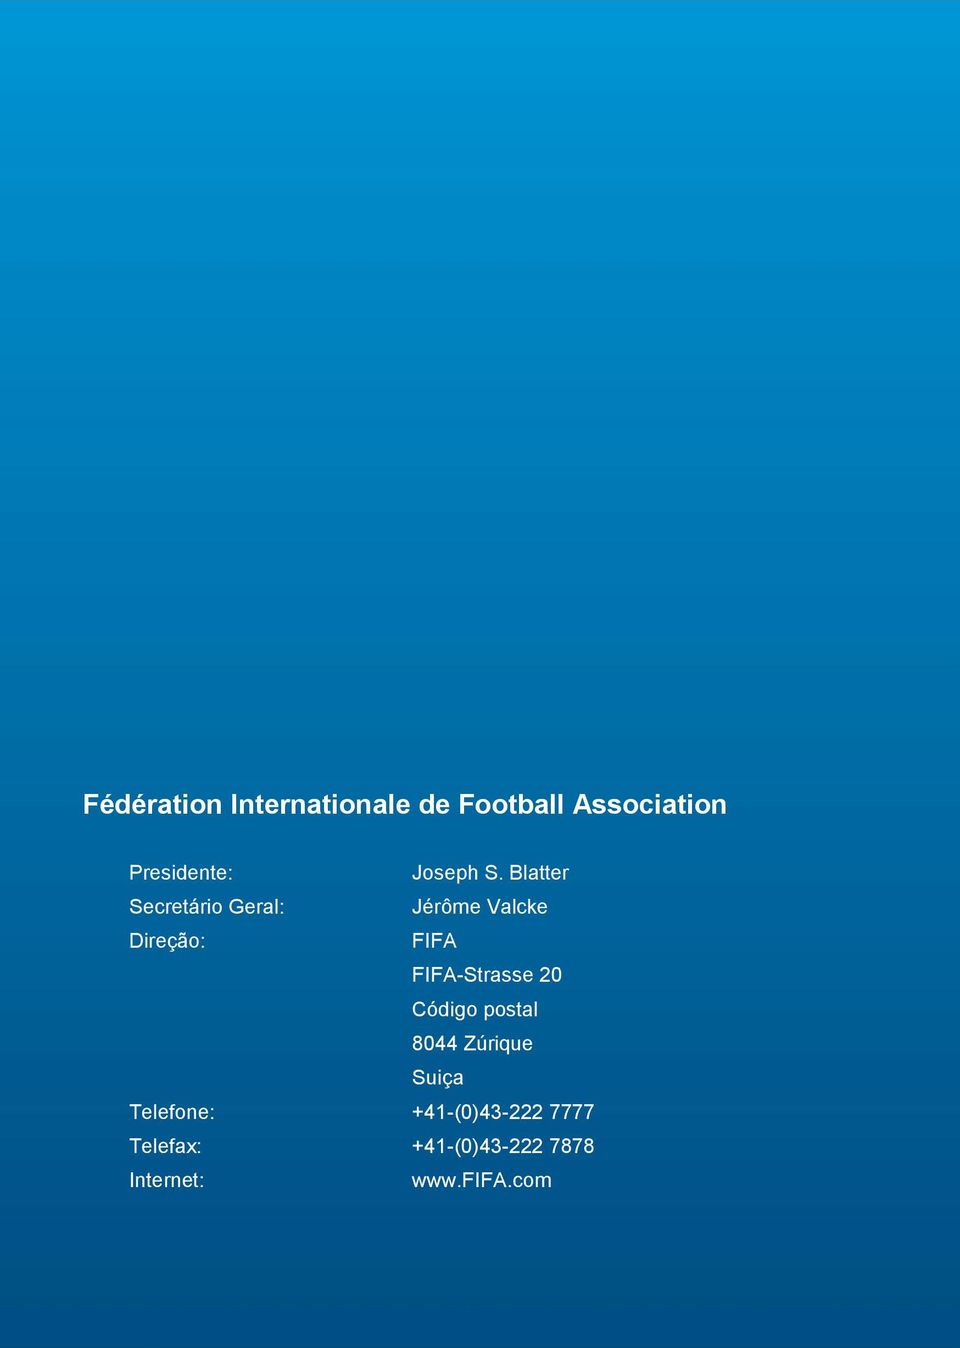 Blatter Secretário Geral: Jérôme Valcke Direção: FIFA